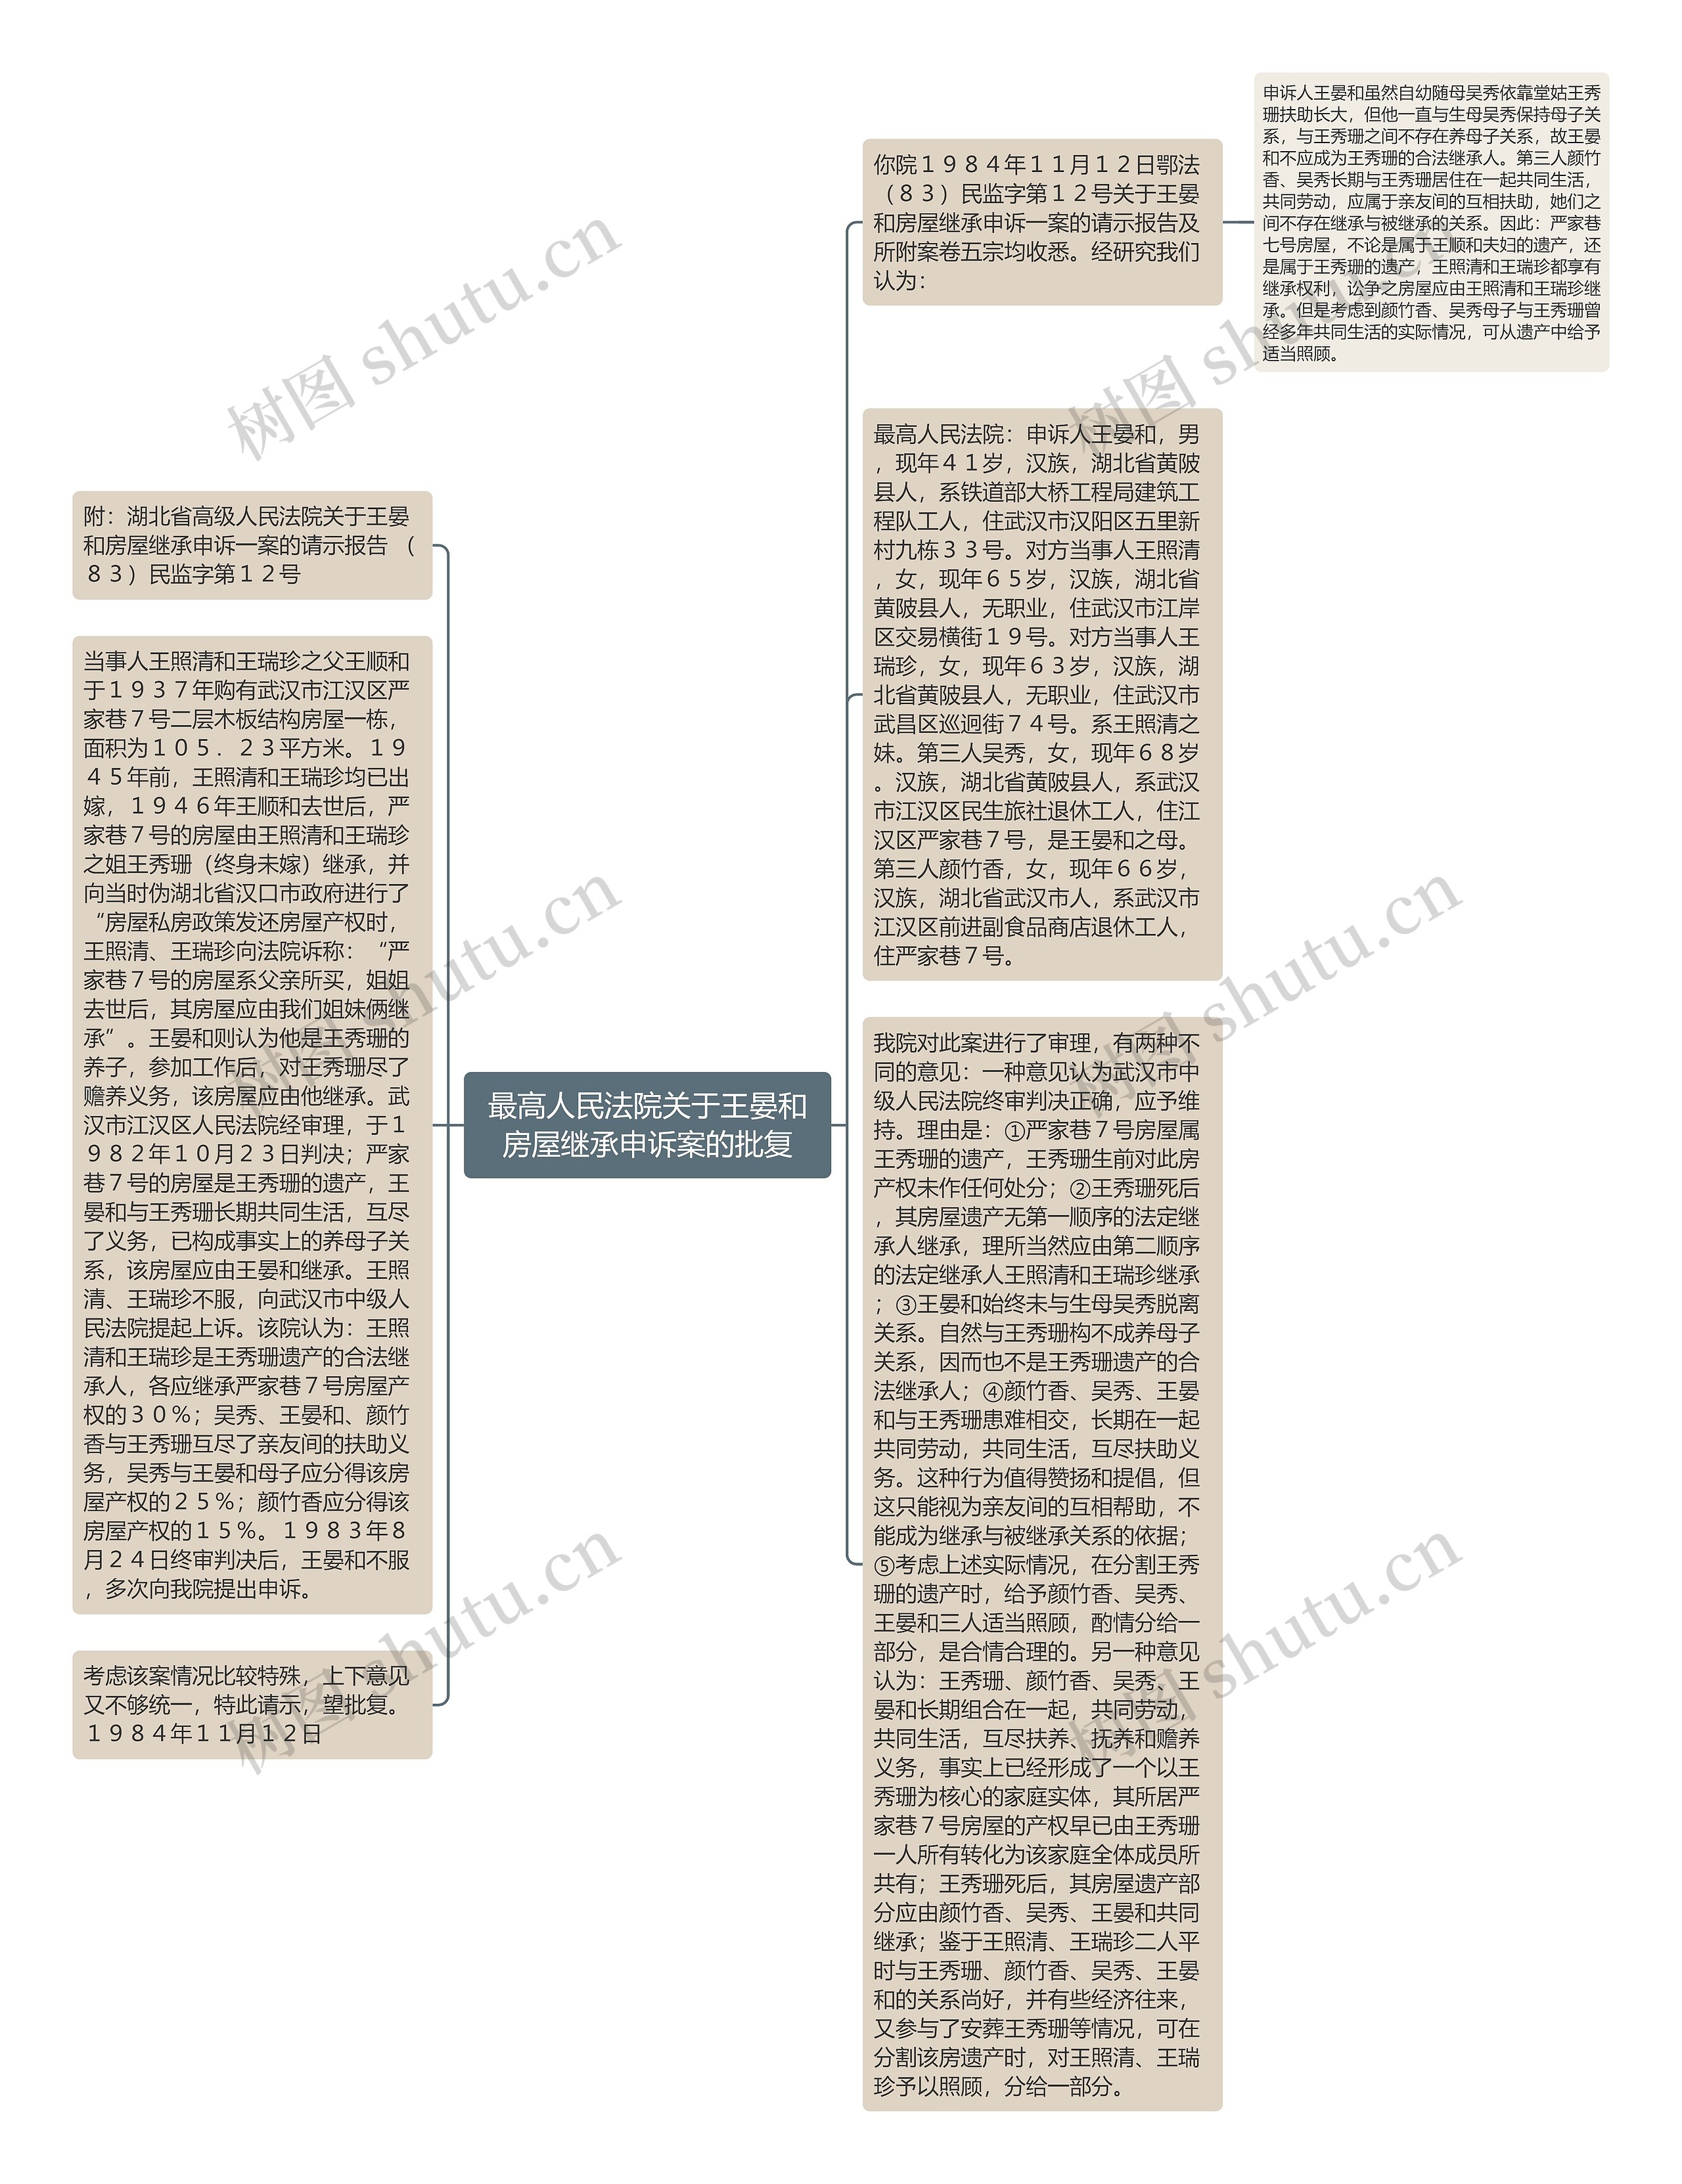 最高人民法院关于王晏和房屋继承申诉案的批复